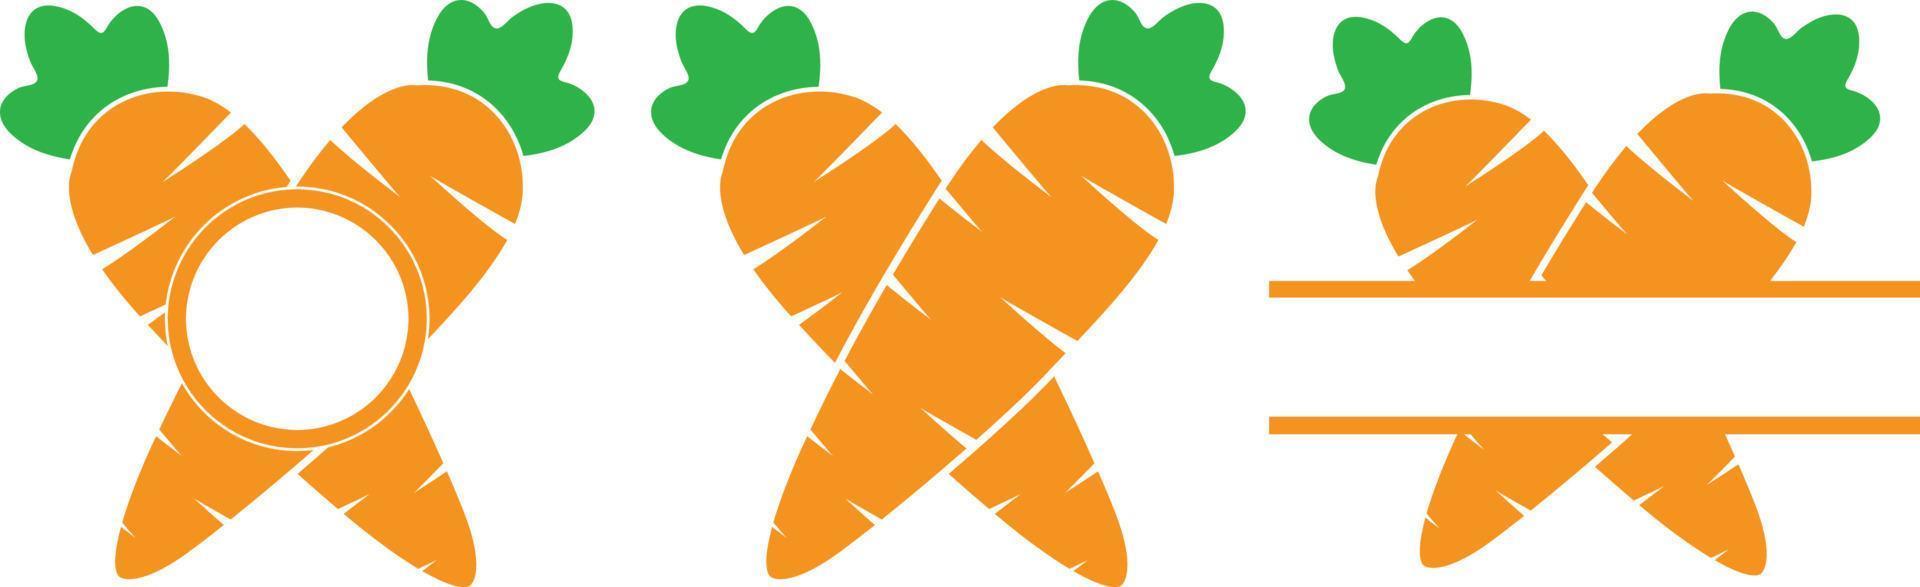 Easter Carrot Split Name Frame vector